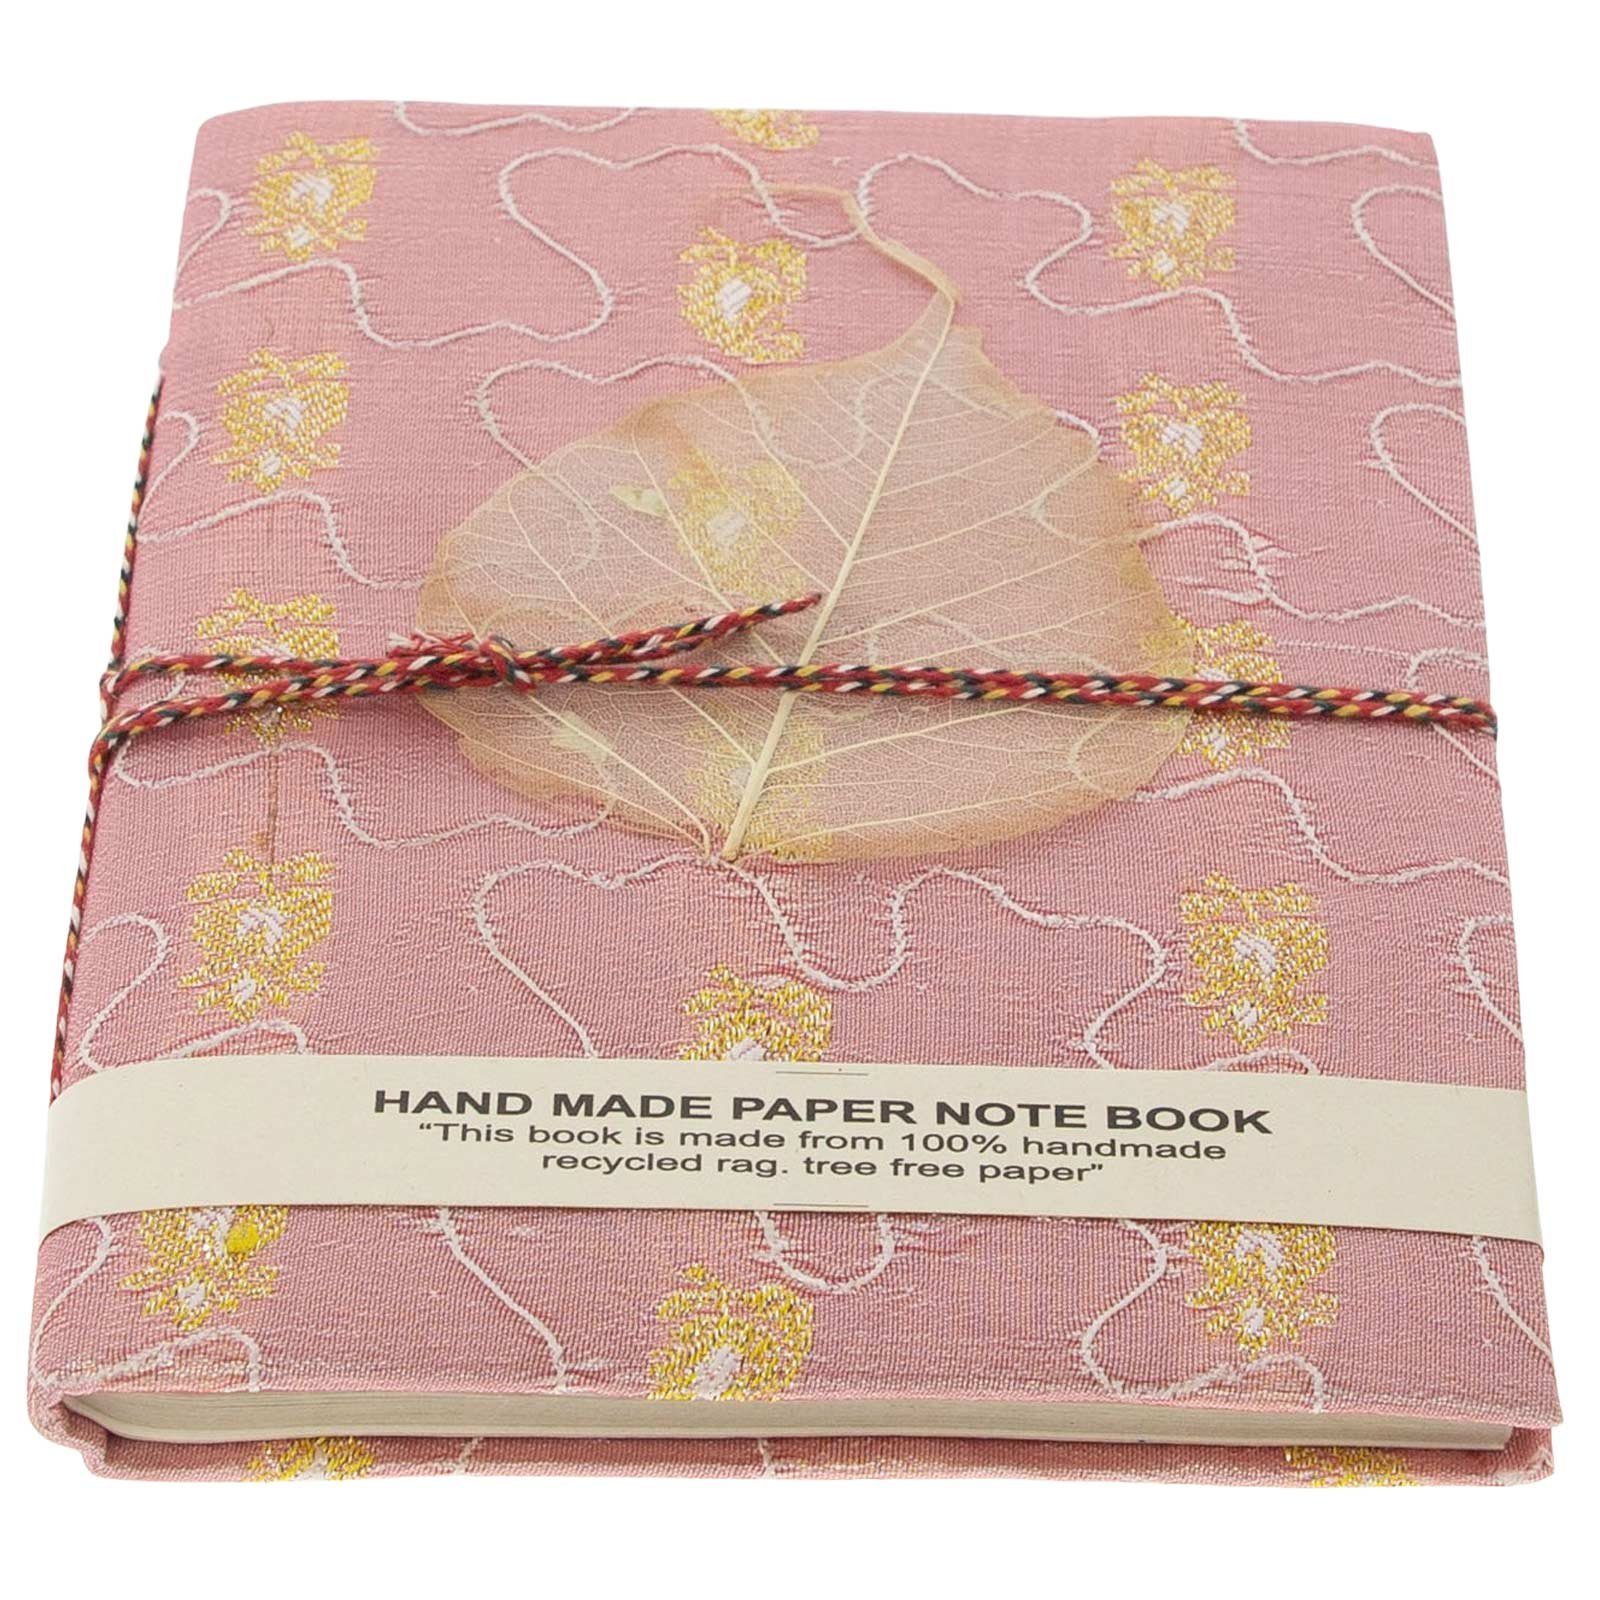 KUNST UND MAGIE handgefertigt 20x15cm Baumwollpapier-Notizbuch Sari Poesie Tagebuch Tagebuch